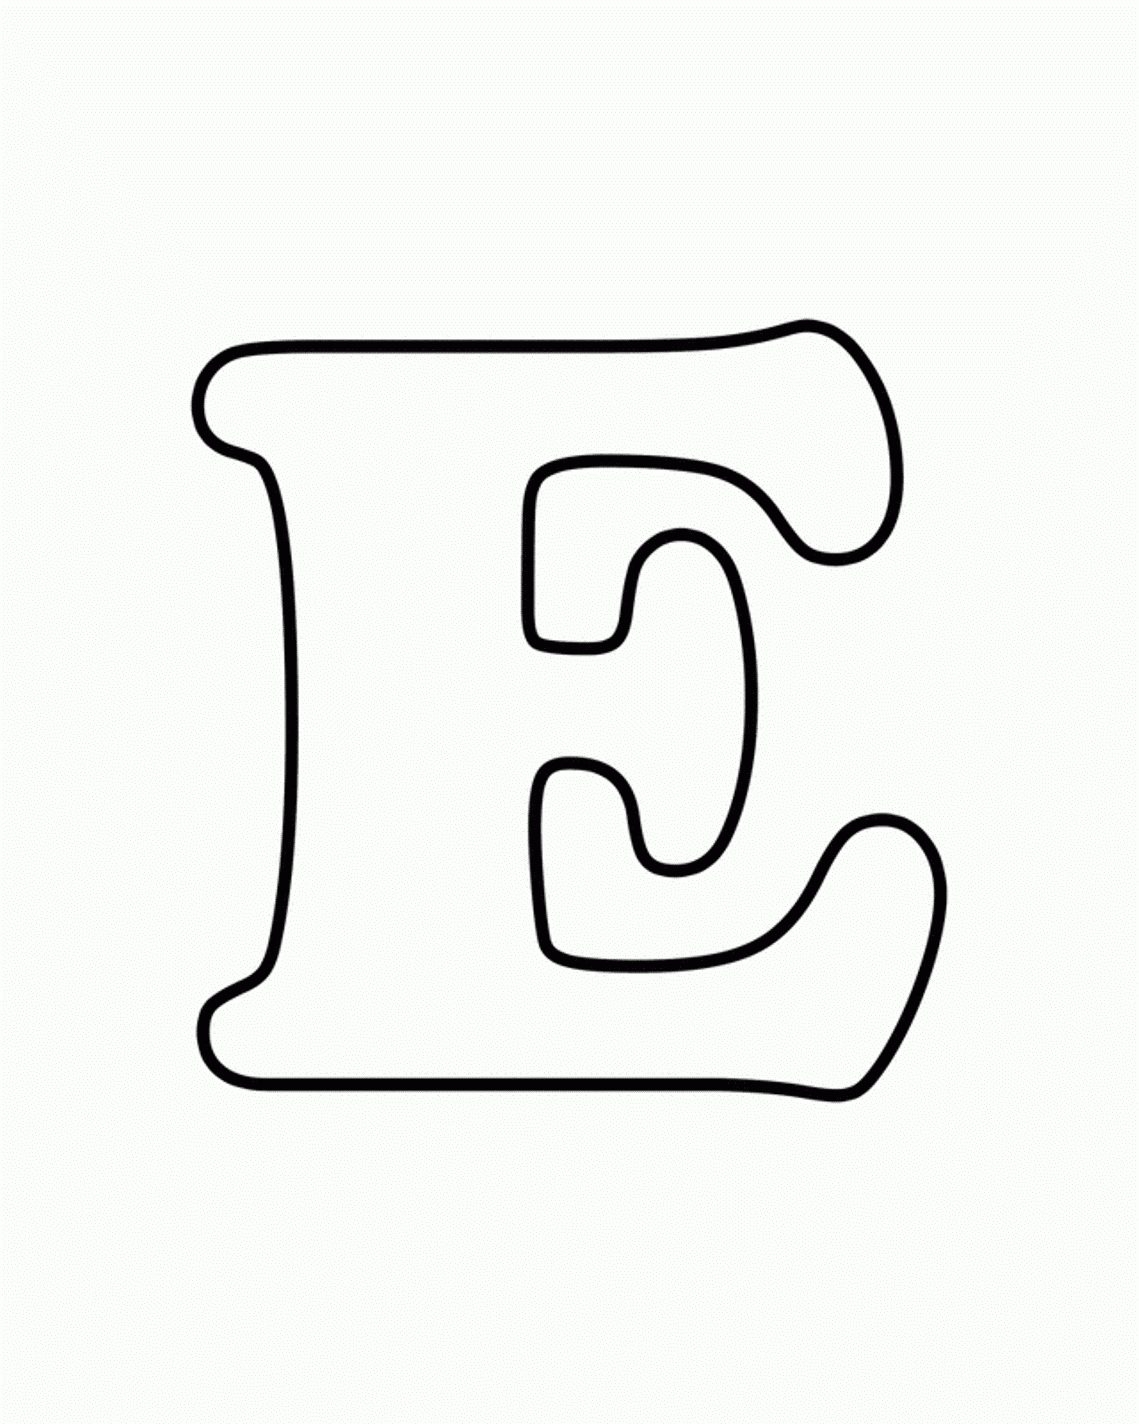 E clipart bubble letter, E bubble letter Transparent FREE for download